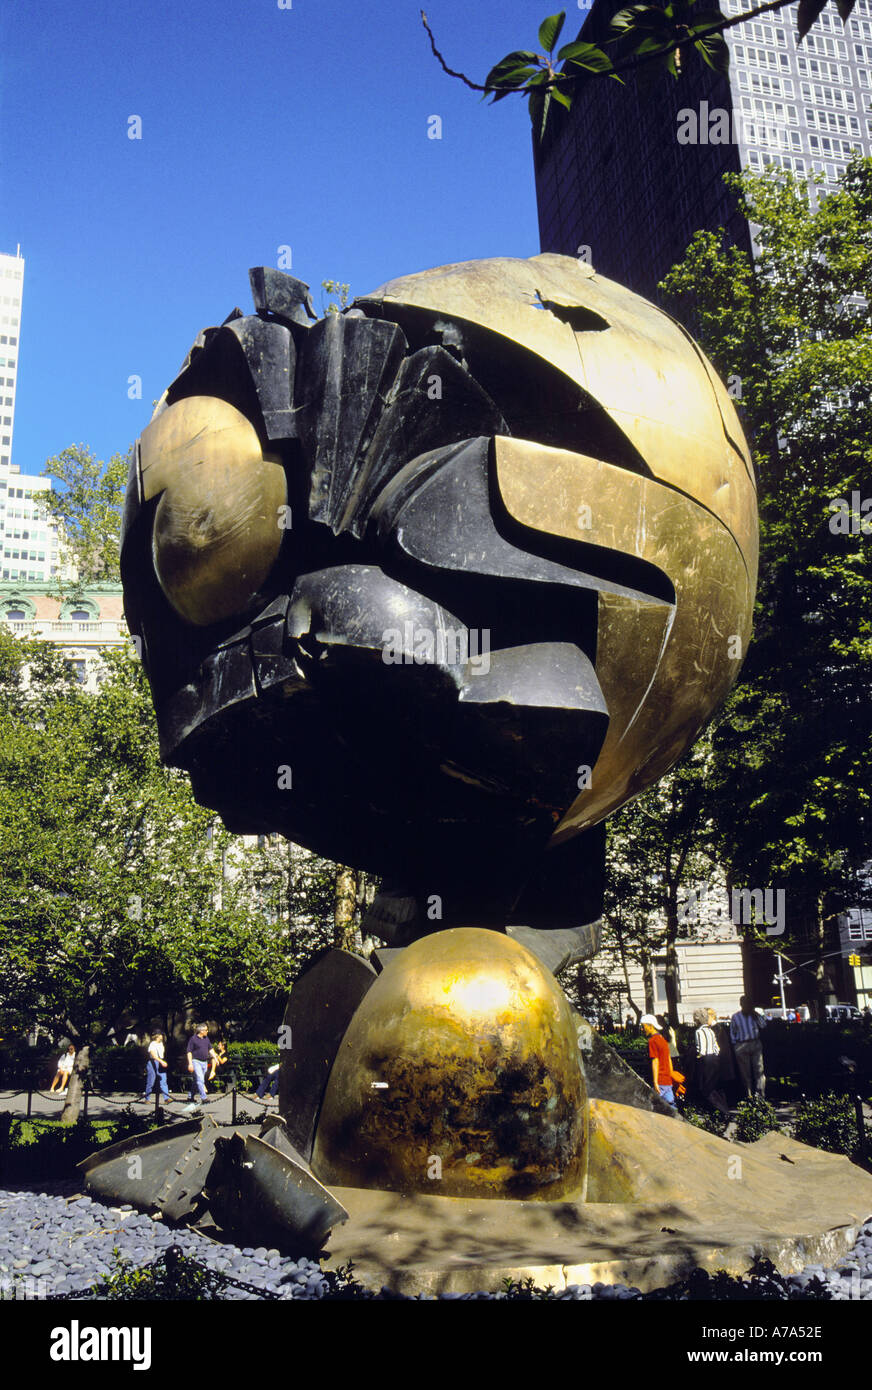 La sphère Sculpture en bronze de Ground Zero, Battery Park, New York Banque D'Images